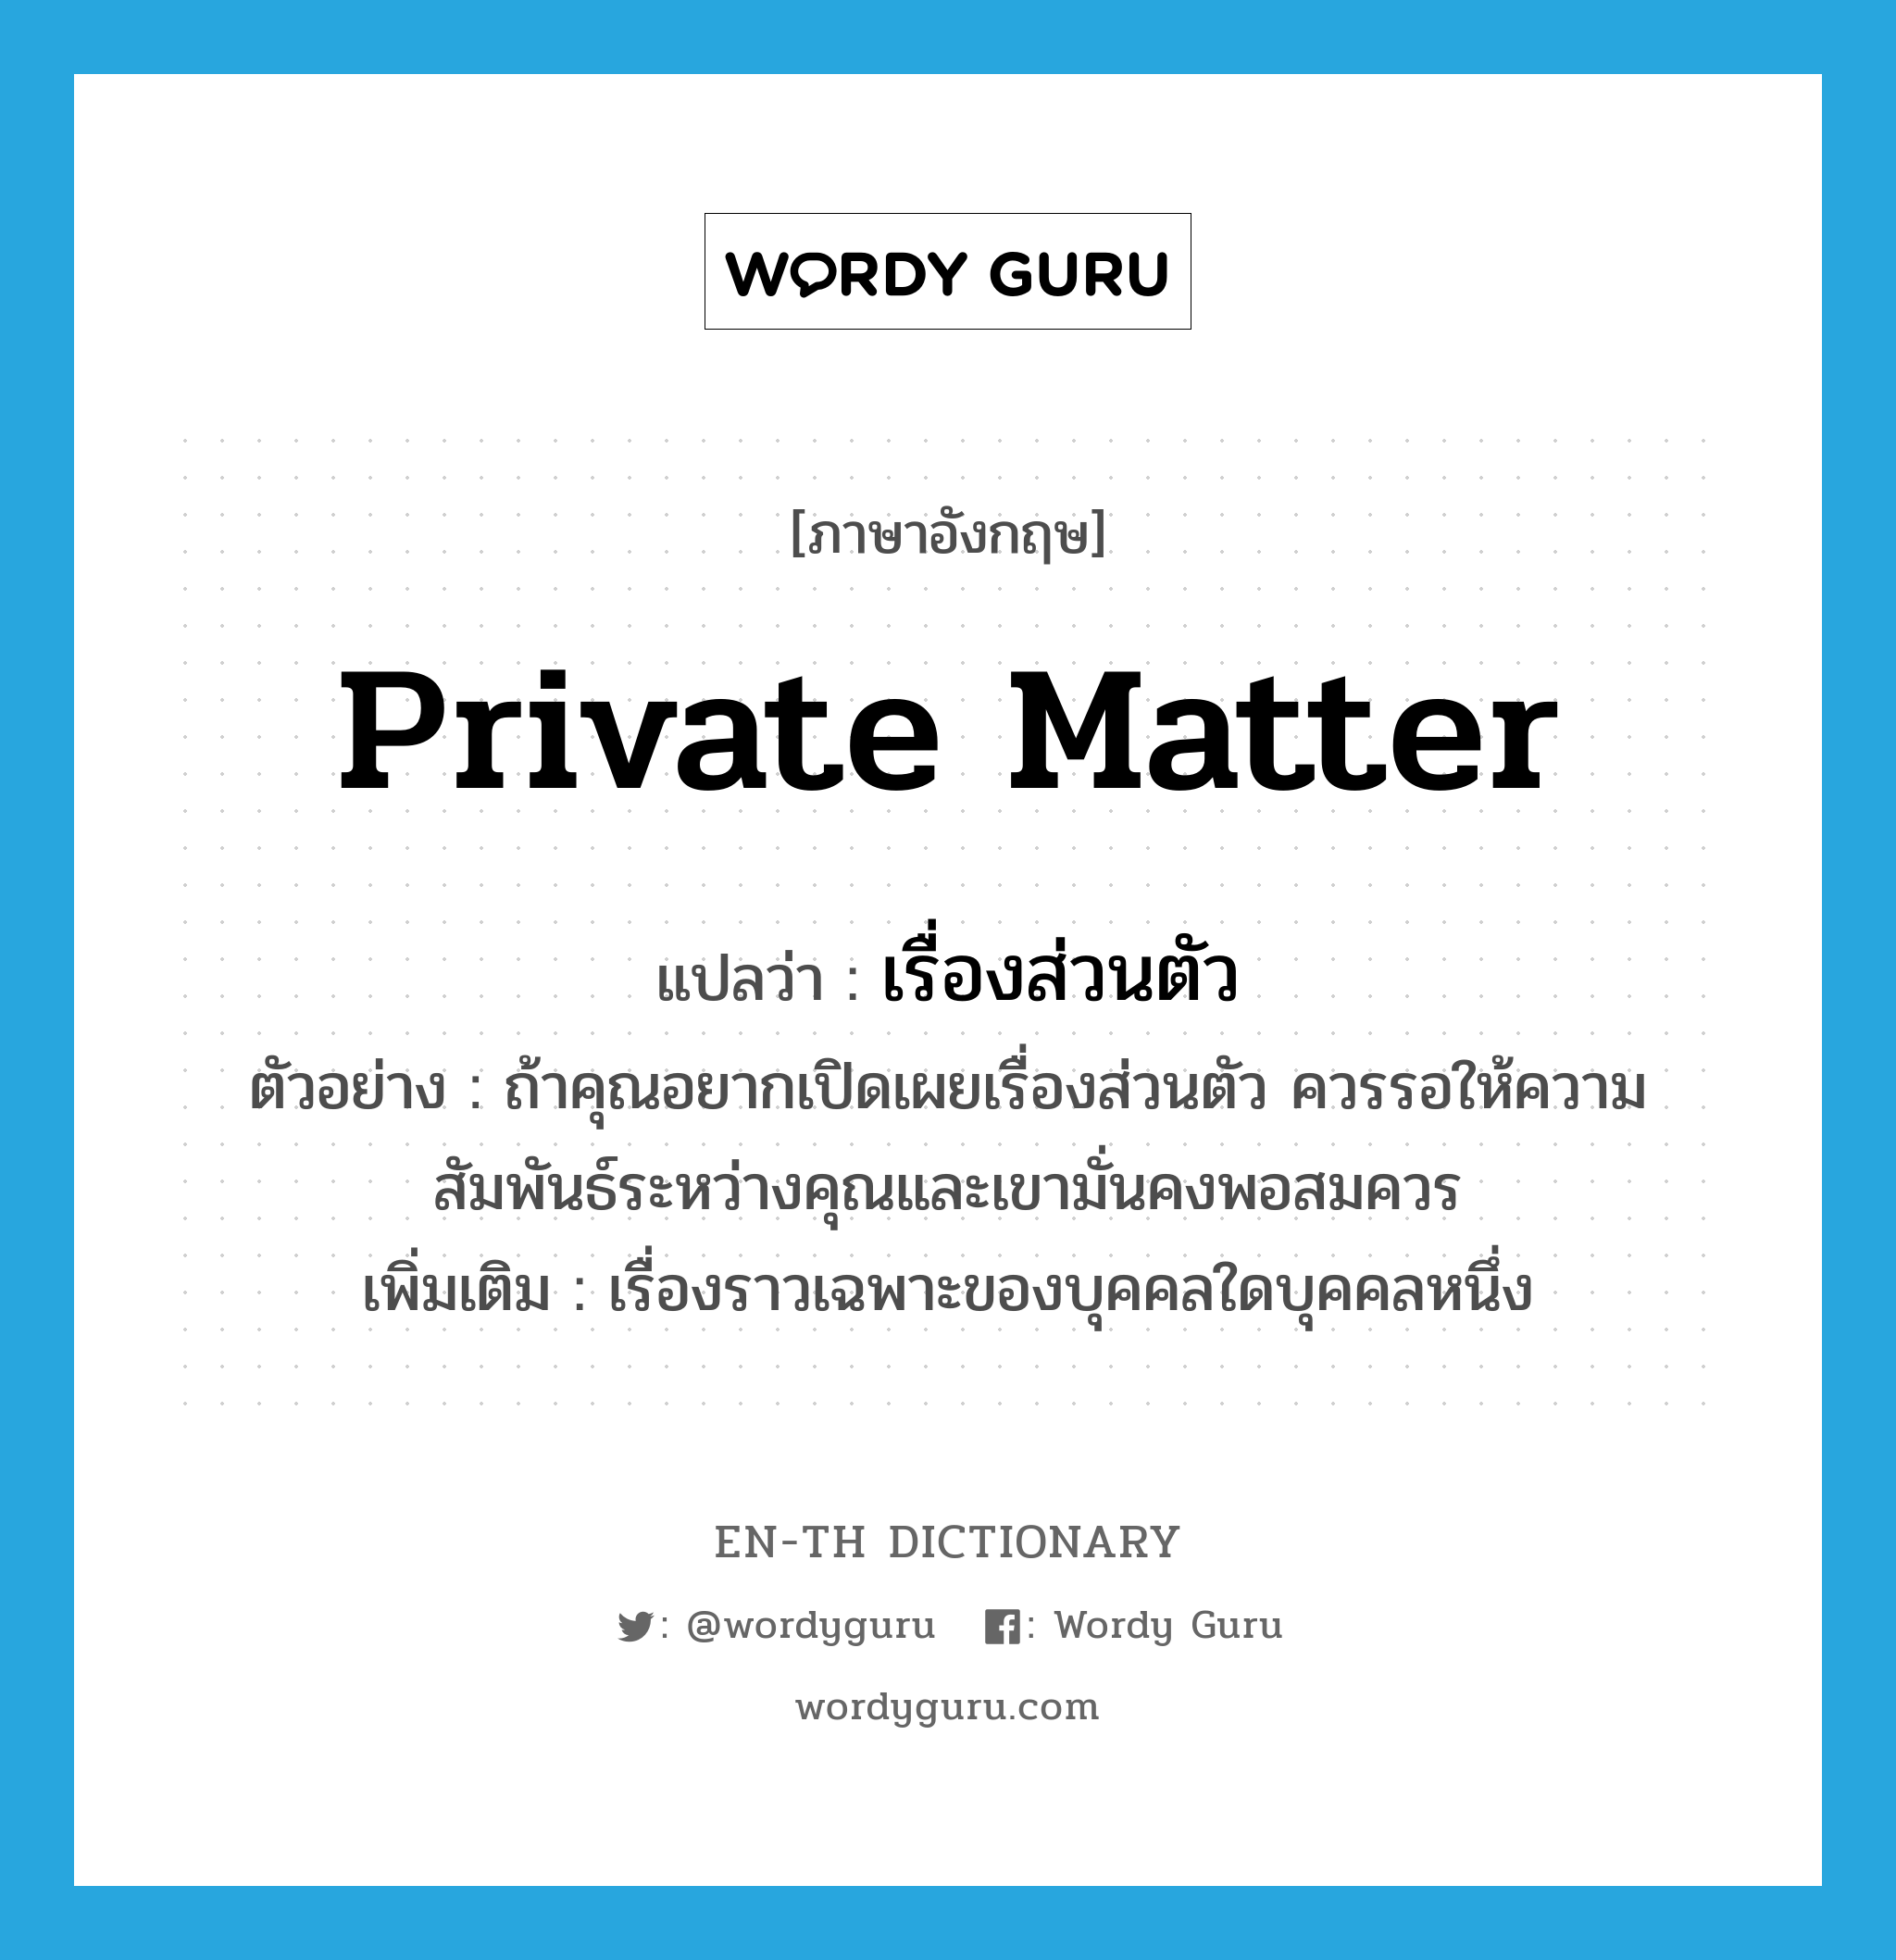 private matter แปลว่า?, คำศัพท์ภาษาอังกฤษ private matter แปลว่า เรื่องส่วนตัว ประเภท N ตัวอย่าง ถ้าคุณอยากเปิดเผยเรื่องส่วนตัว ควรรอให้ความสัมพันธ์ระหว่างคุณและเขามั่นคงพอสมควร เพิ่มเติม เรื่องราวเฉพาะของบุคคลใดบุคคลหนึ่ง หมวด N